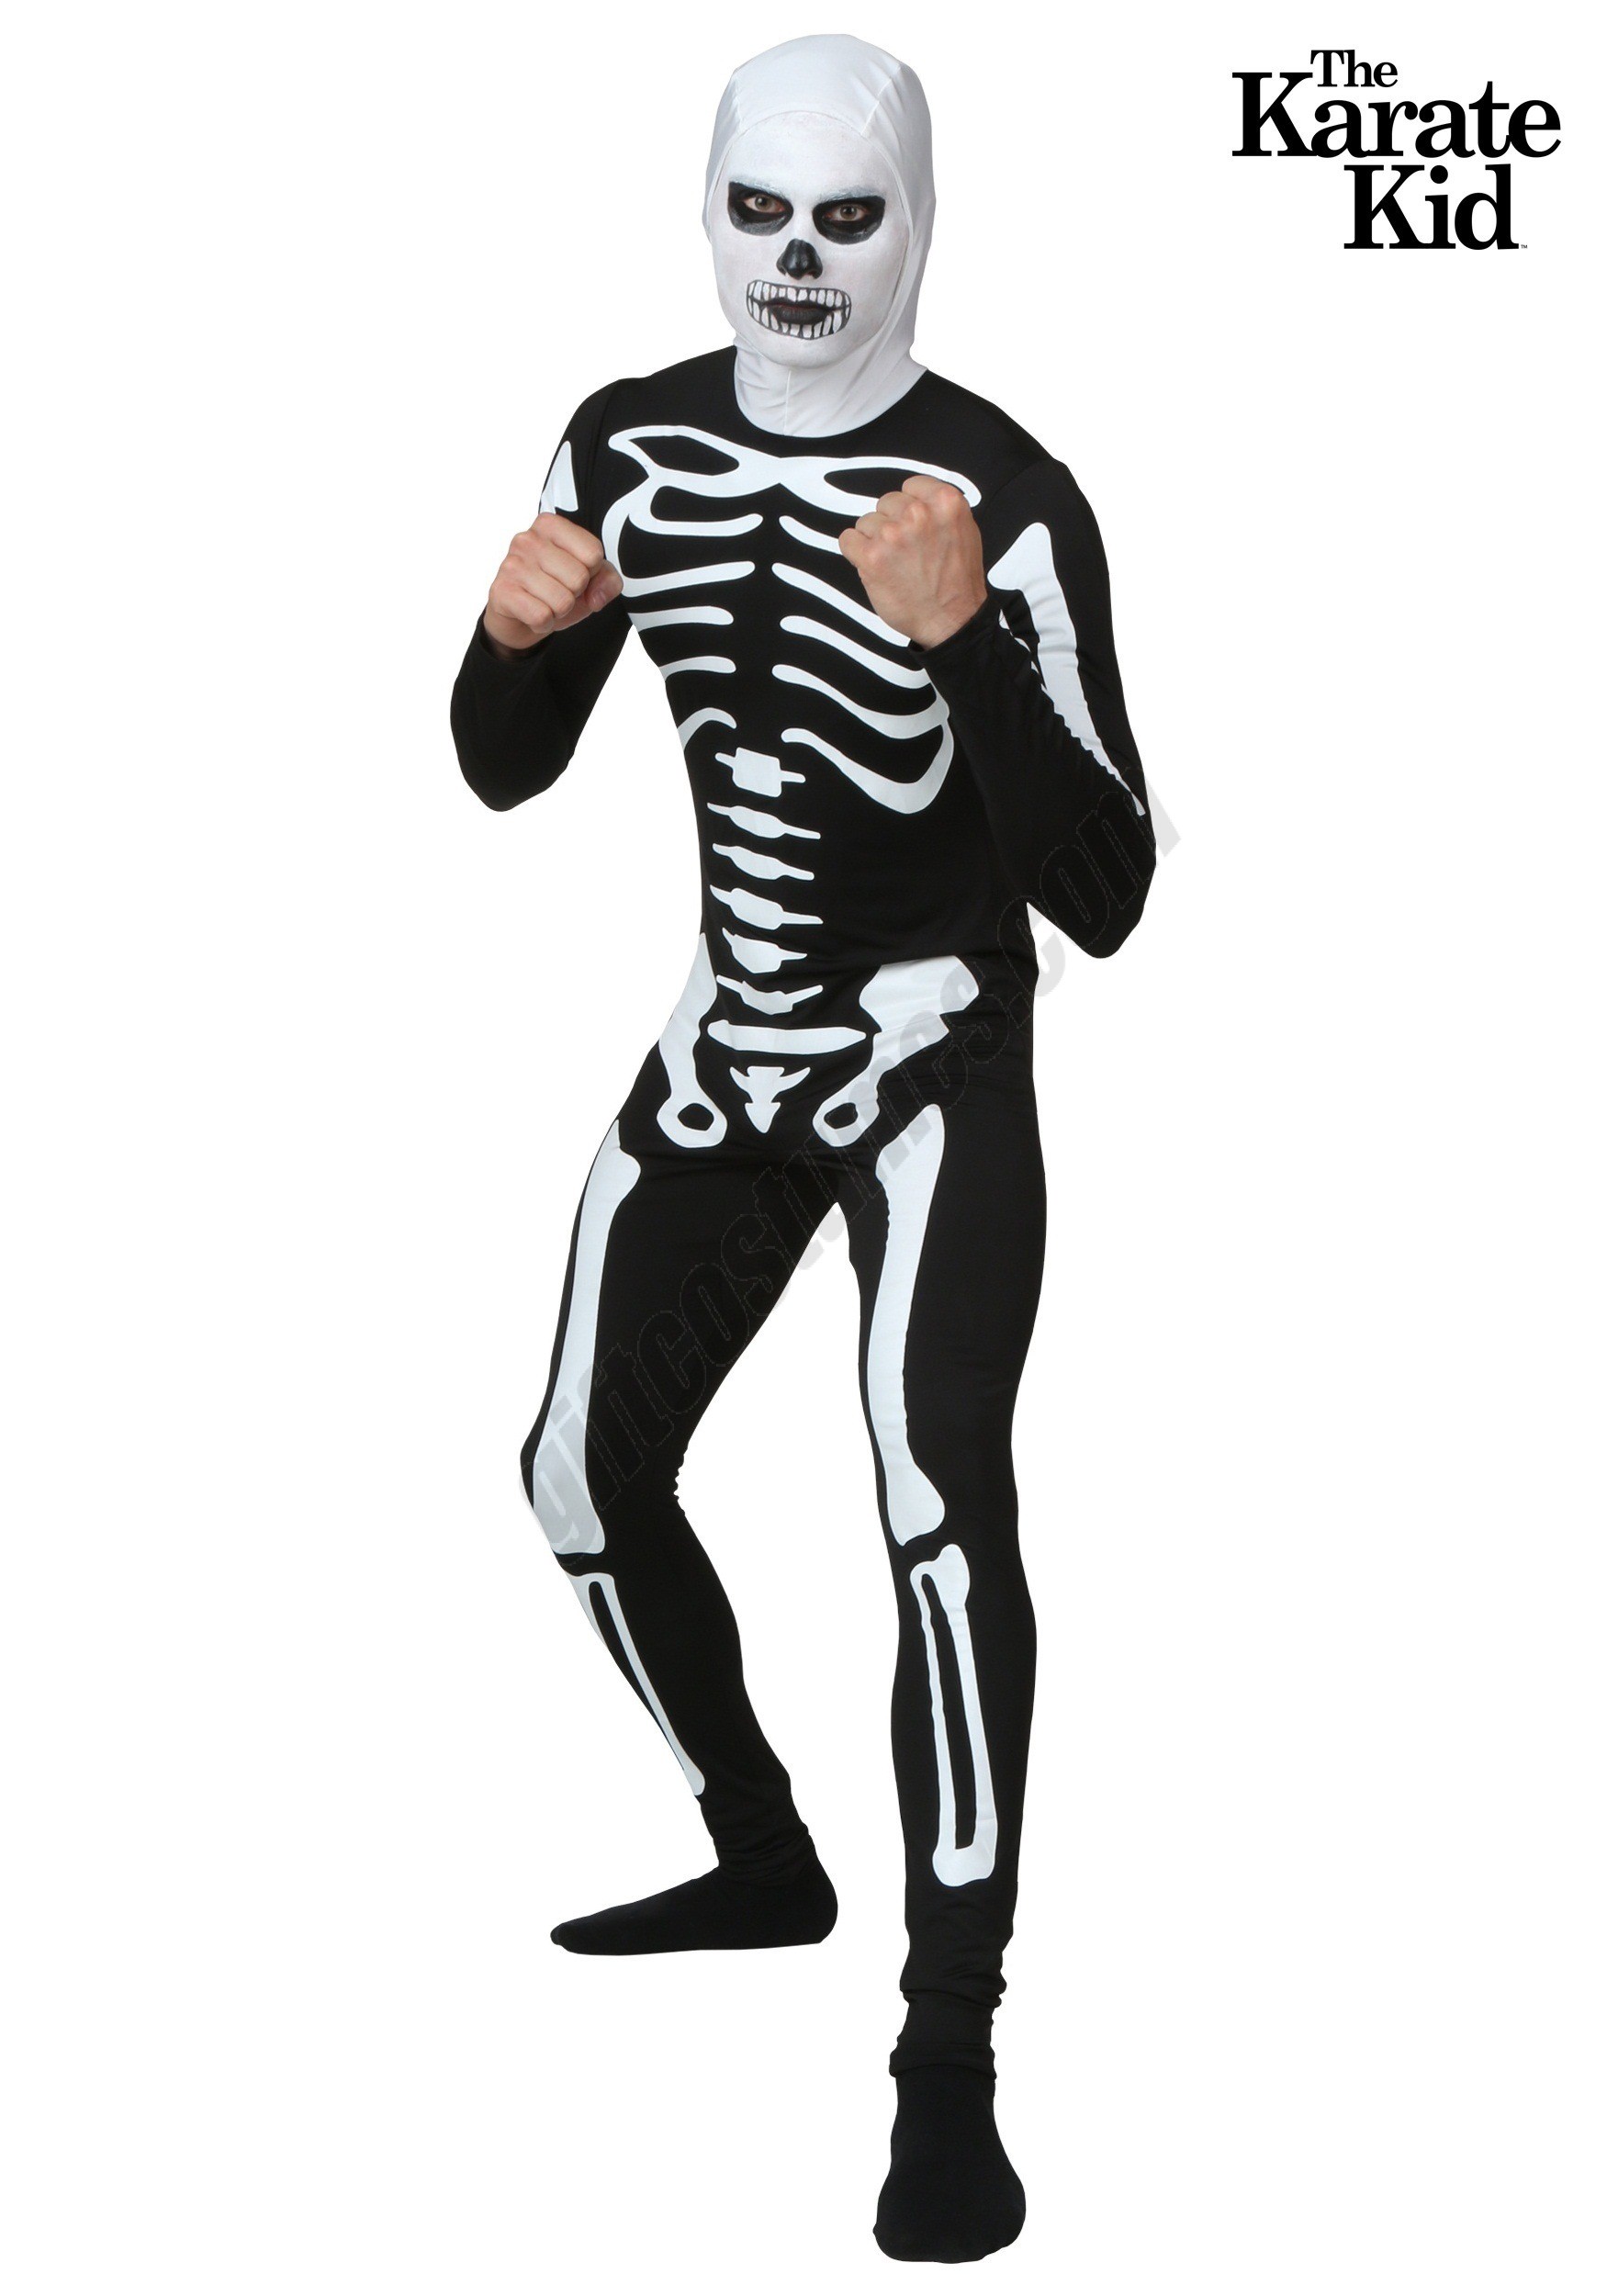 Plus Size Karate Kid Skeleton Suit Costume Promotions - Plus Size Karate Kid Skeleton Suit Costume Promotions